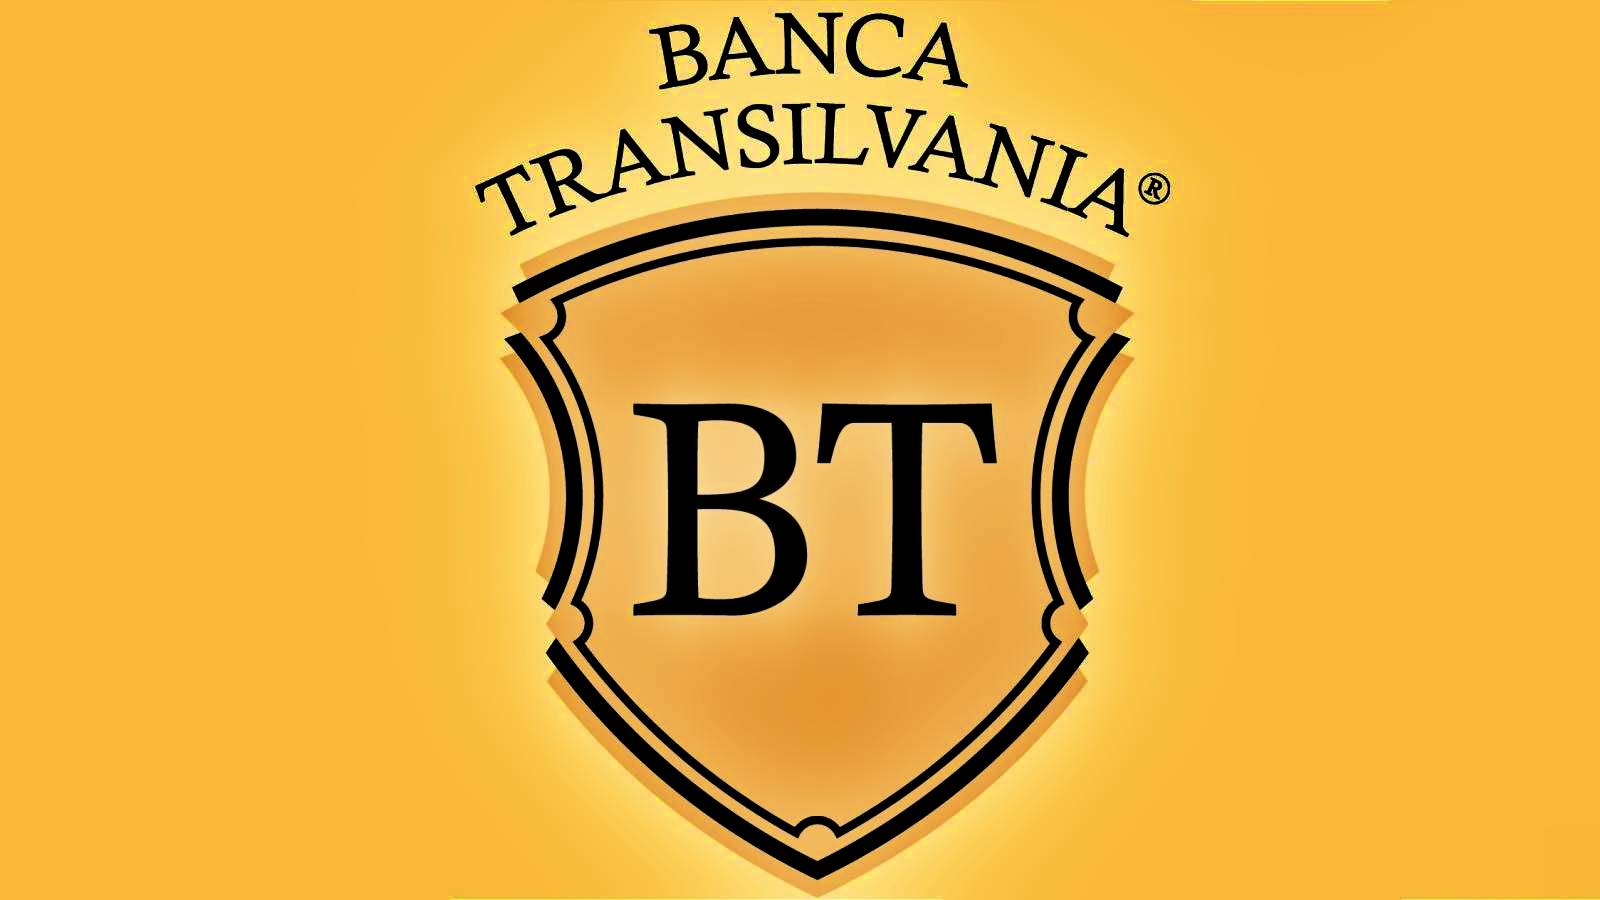 BANCA Transilvania success